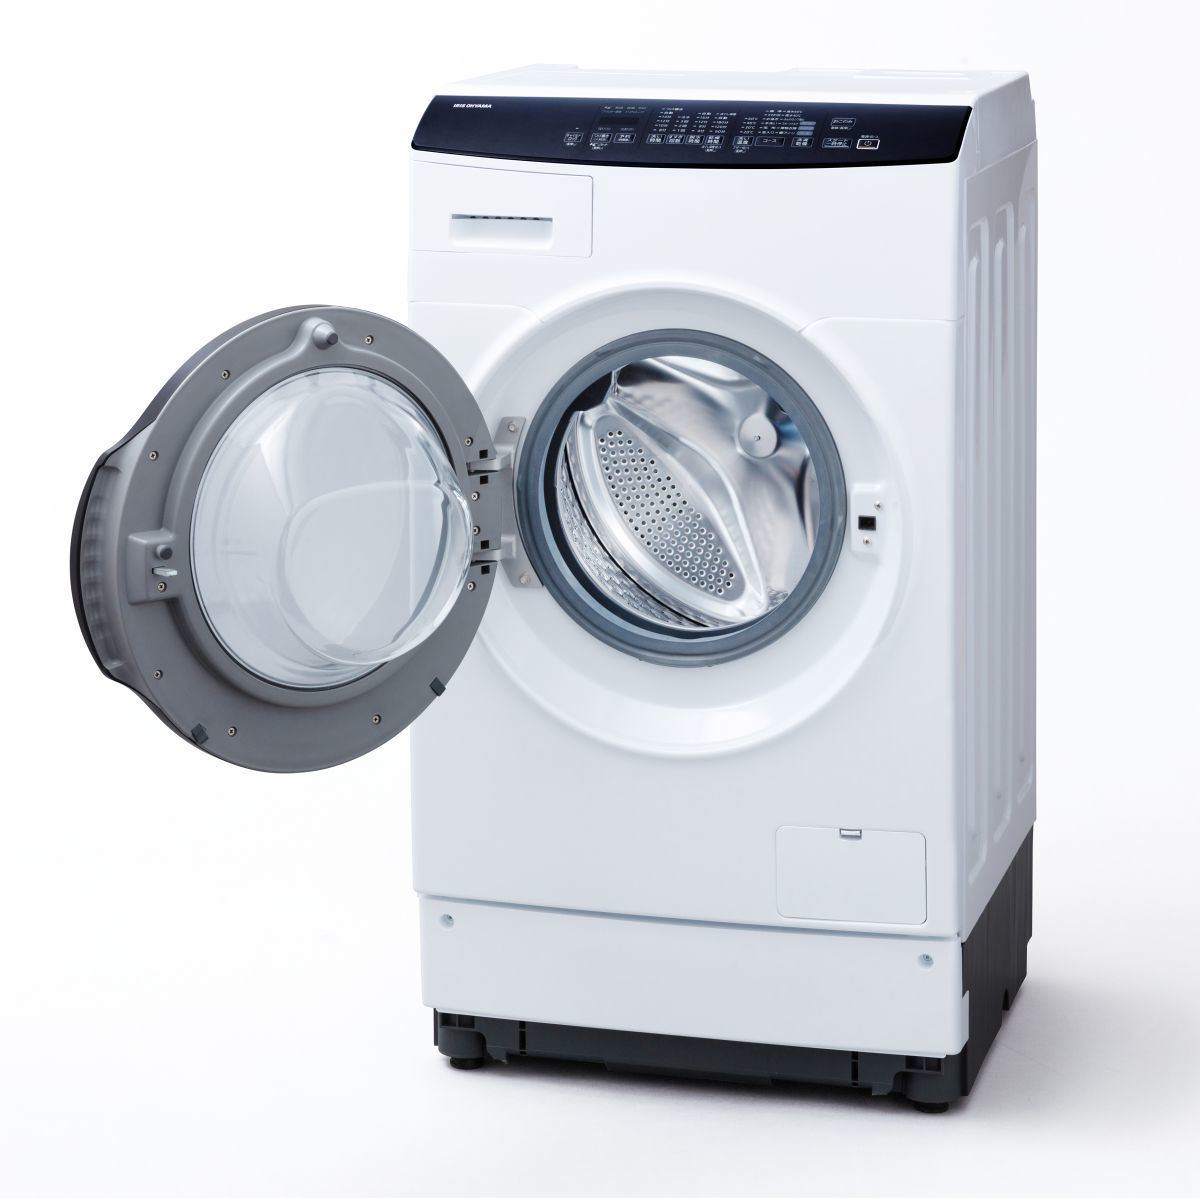 K☆051 アイリスオーヤマ ドラム式洗濯機 FLK832 設置オプション無料